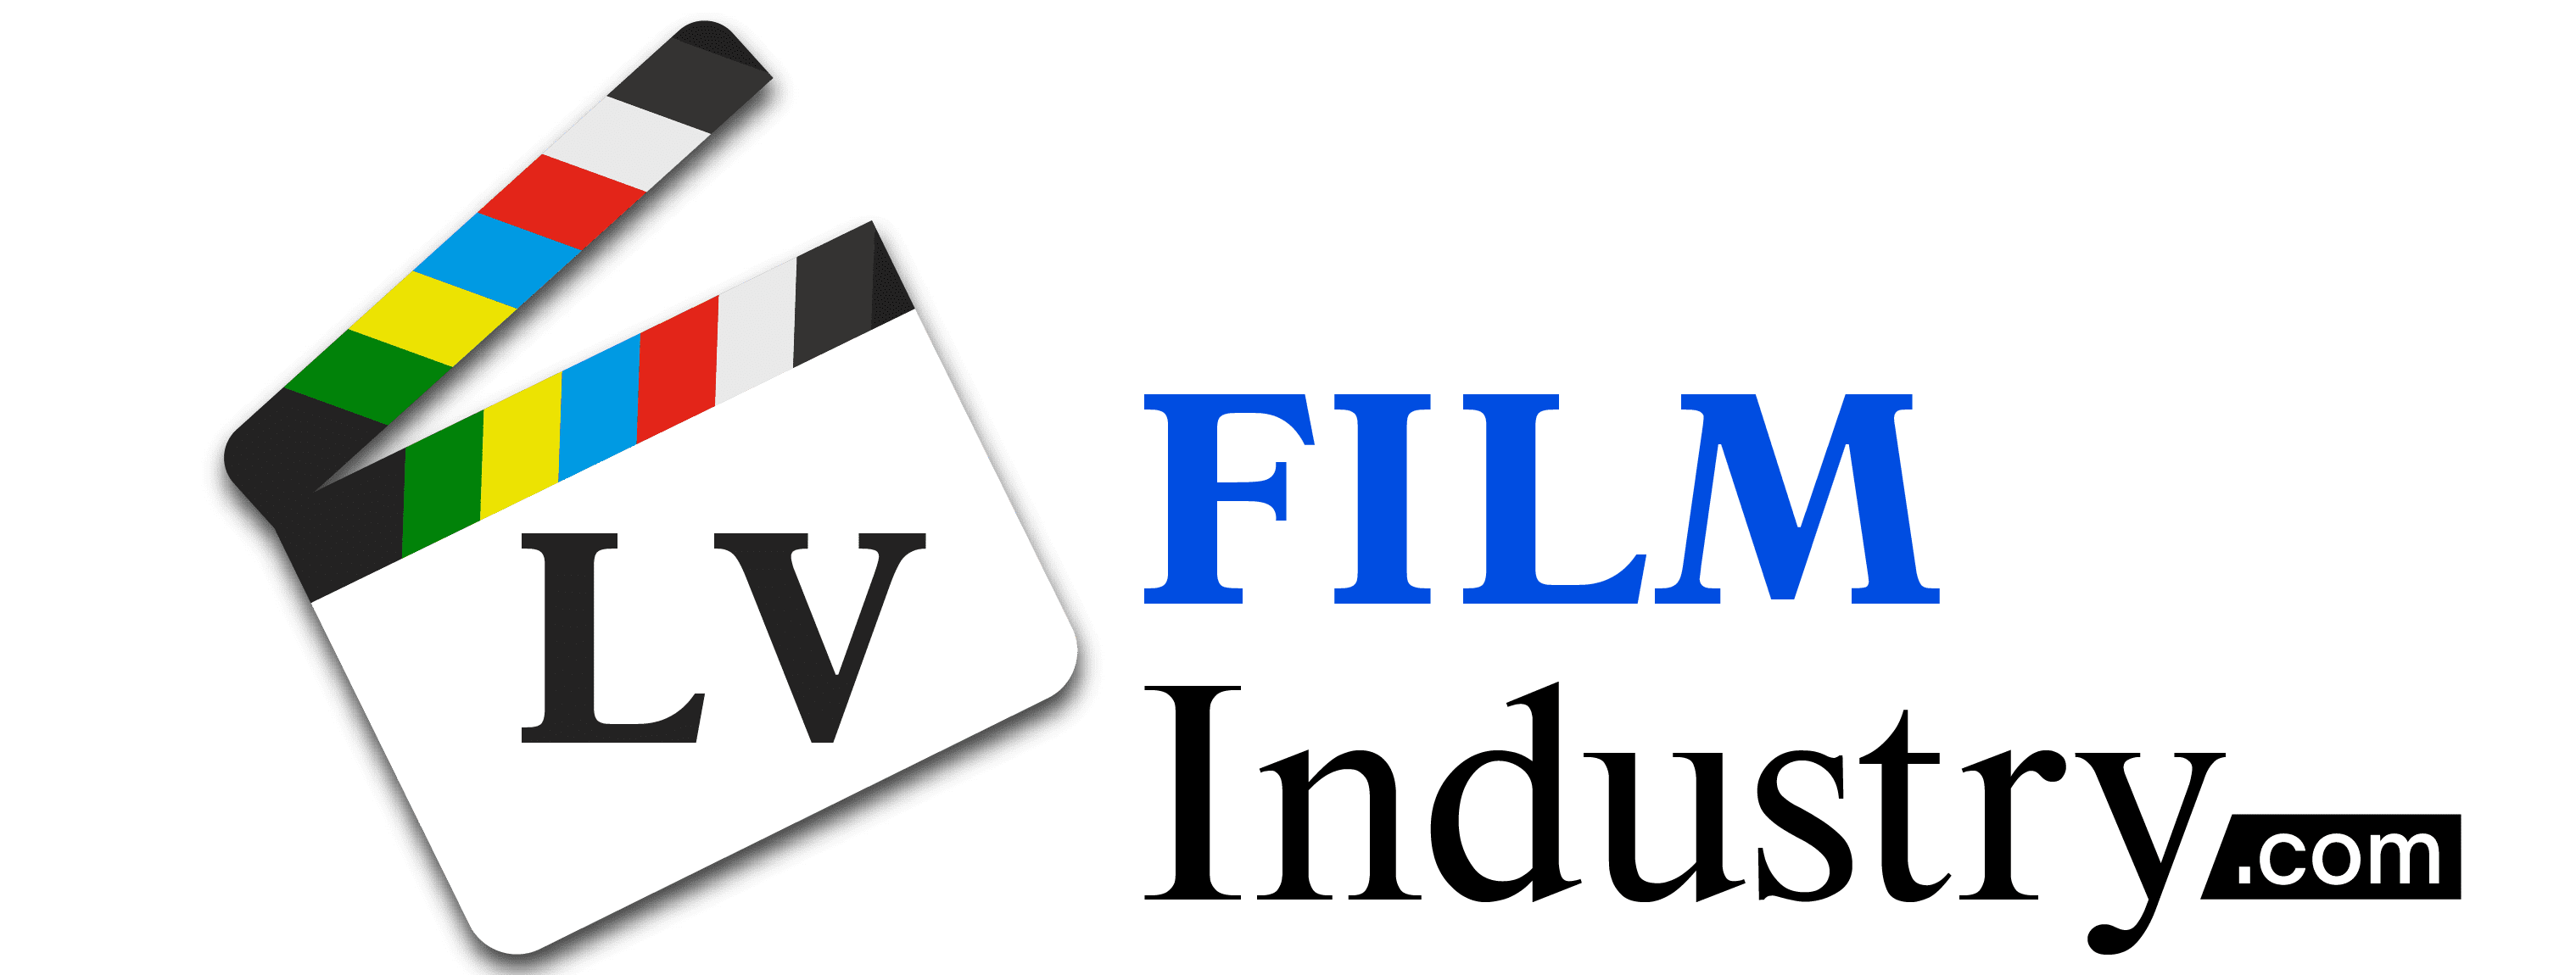 LVFilmIndustry.com